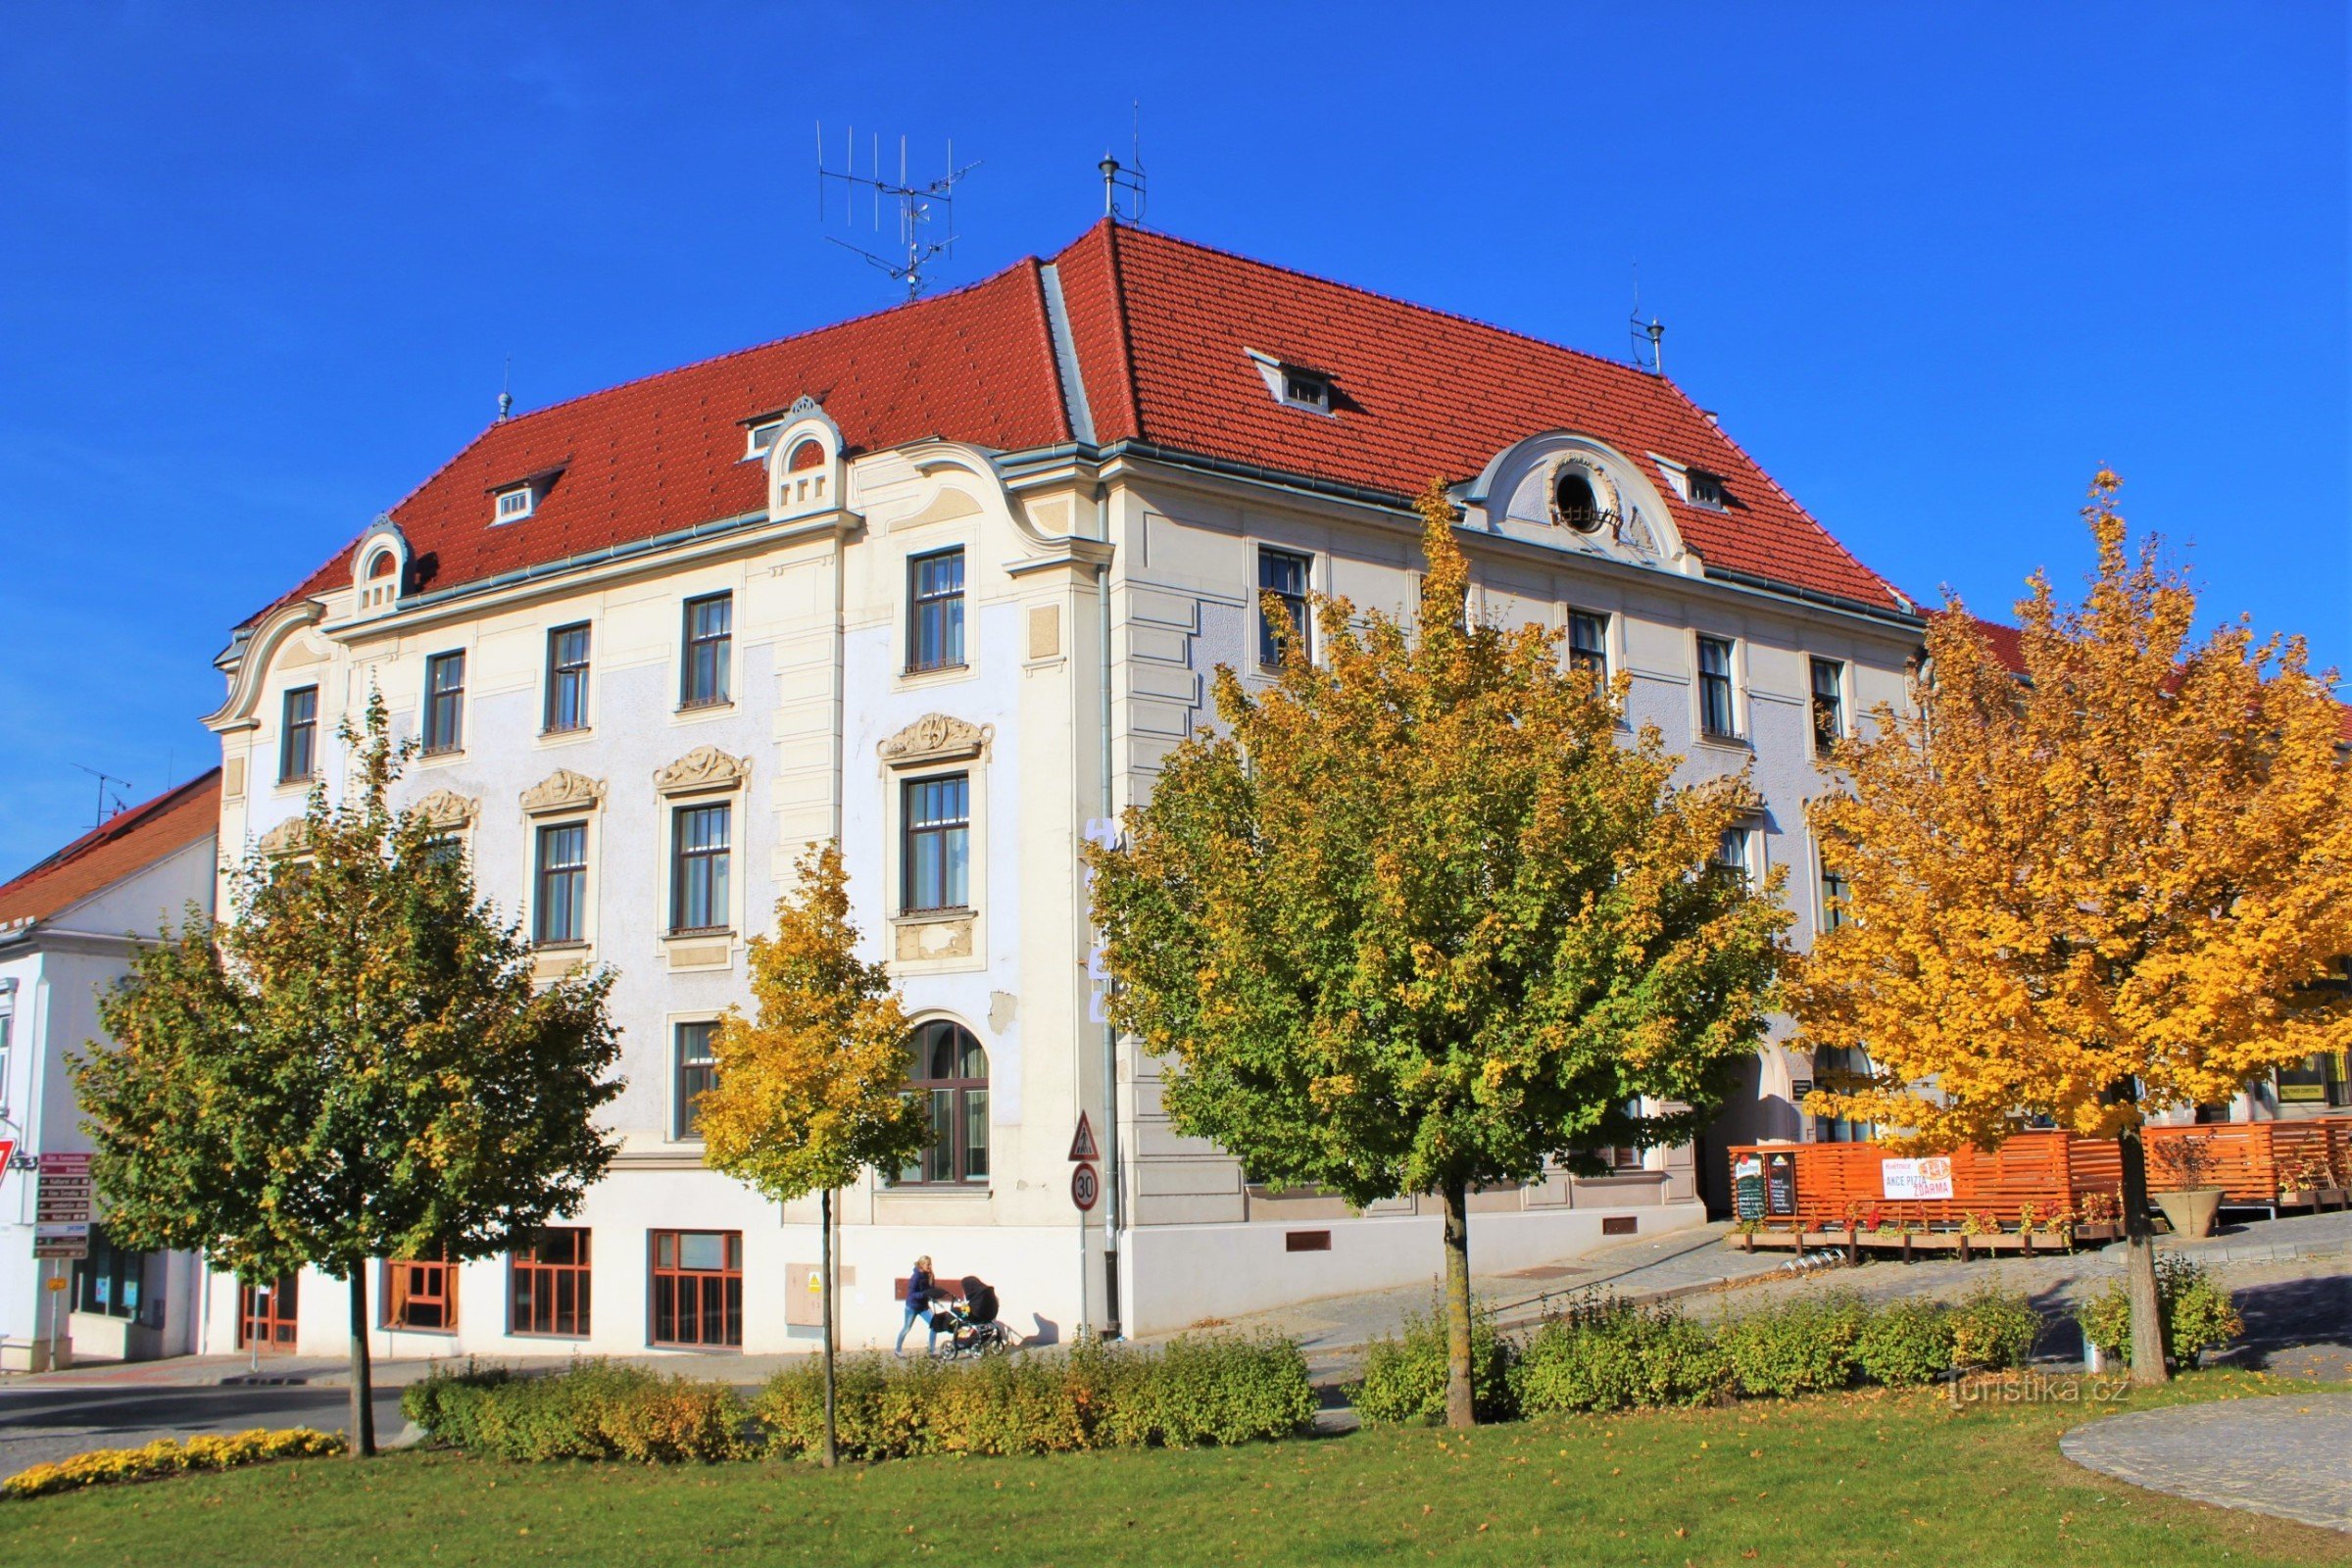 Hotel Květnice på pladsen i Tišnov